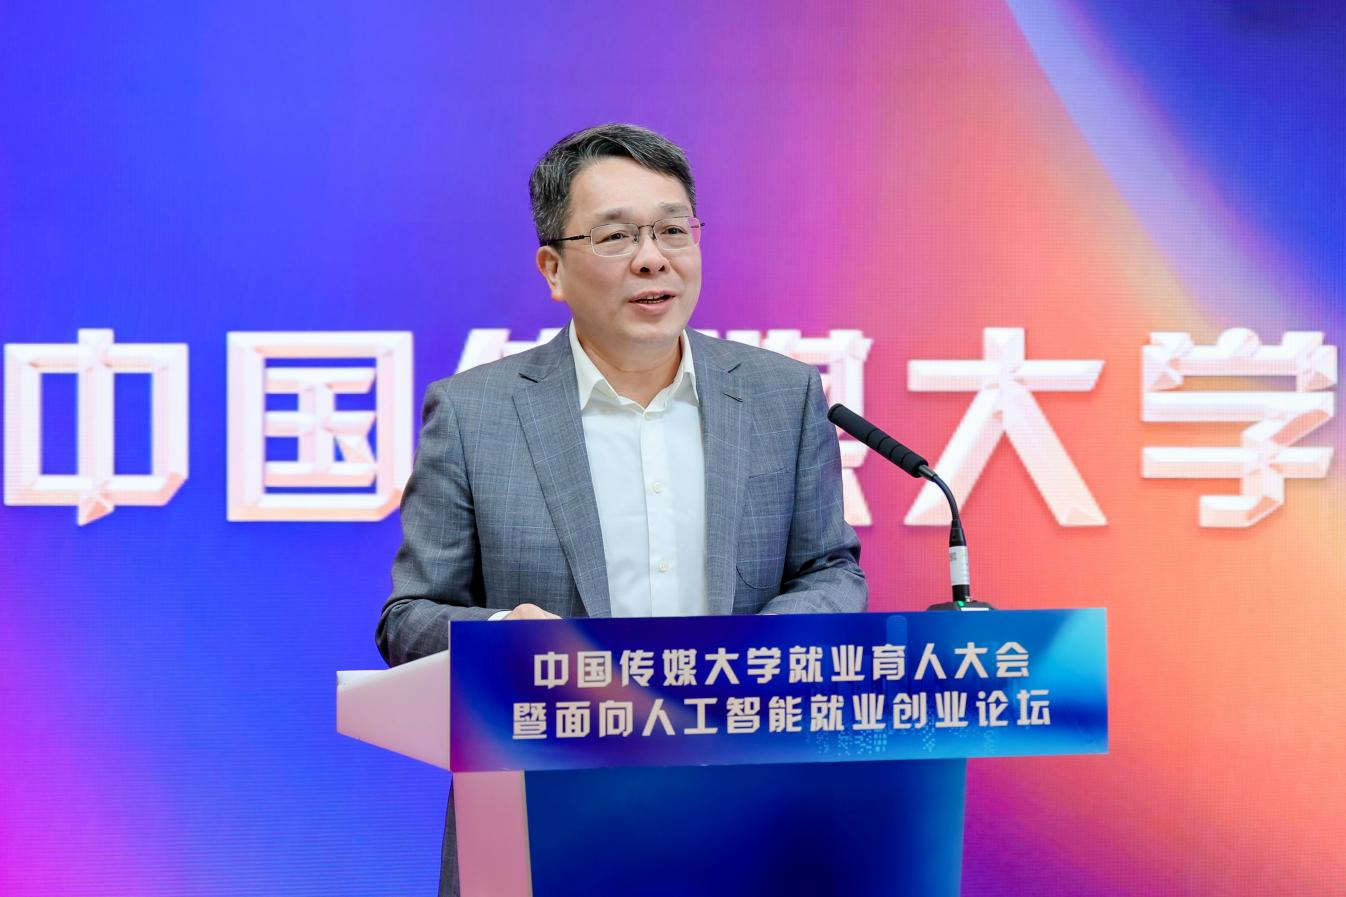 中国传媒大学就业育人大会暨面向人工智能就业创业论坛顺利举行